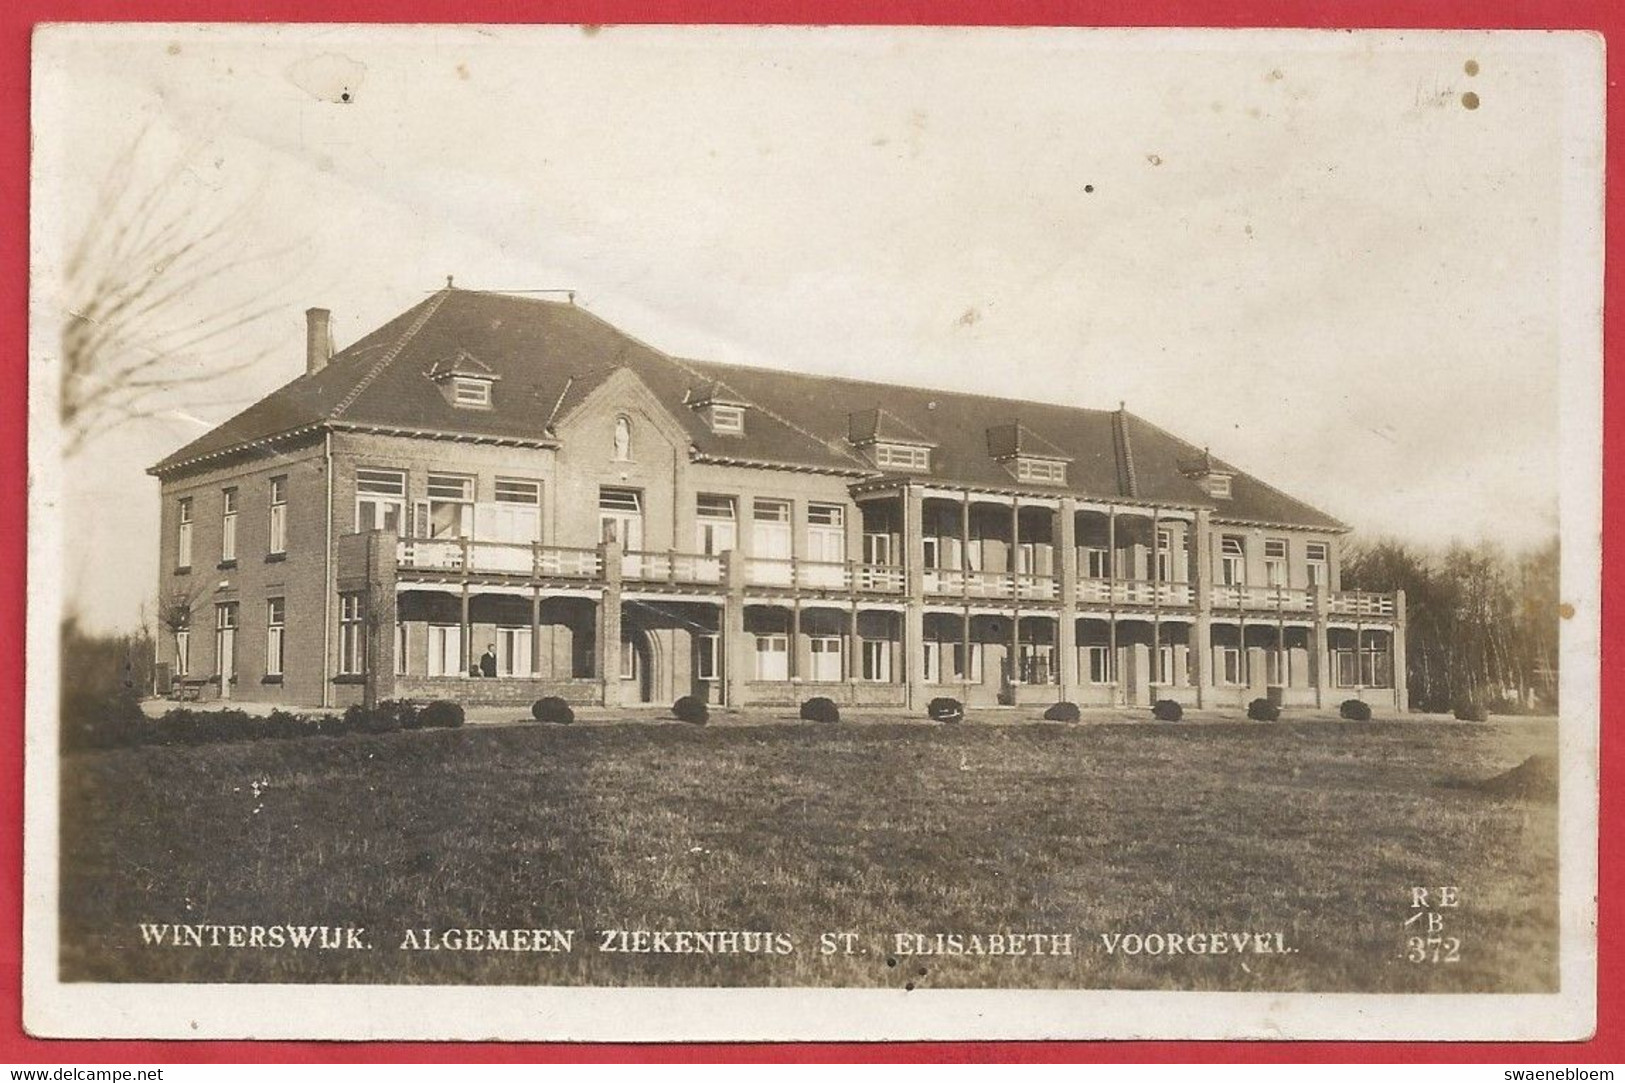 NL.- Winterswijk, Algemeen Ziekenhuis - St. ELISABETH -. Voorgevel. 1945 - Winterswijk